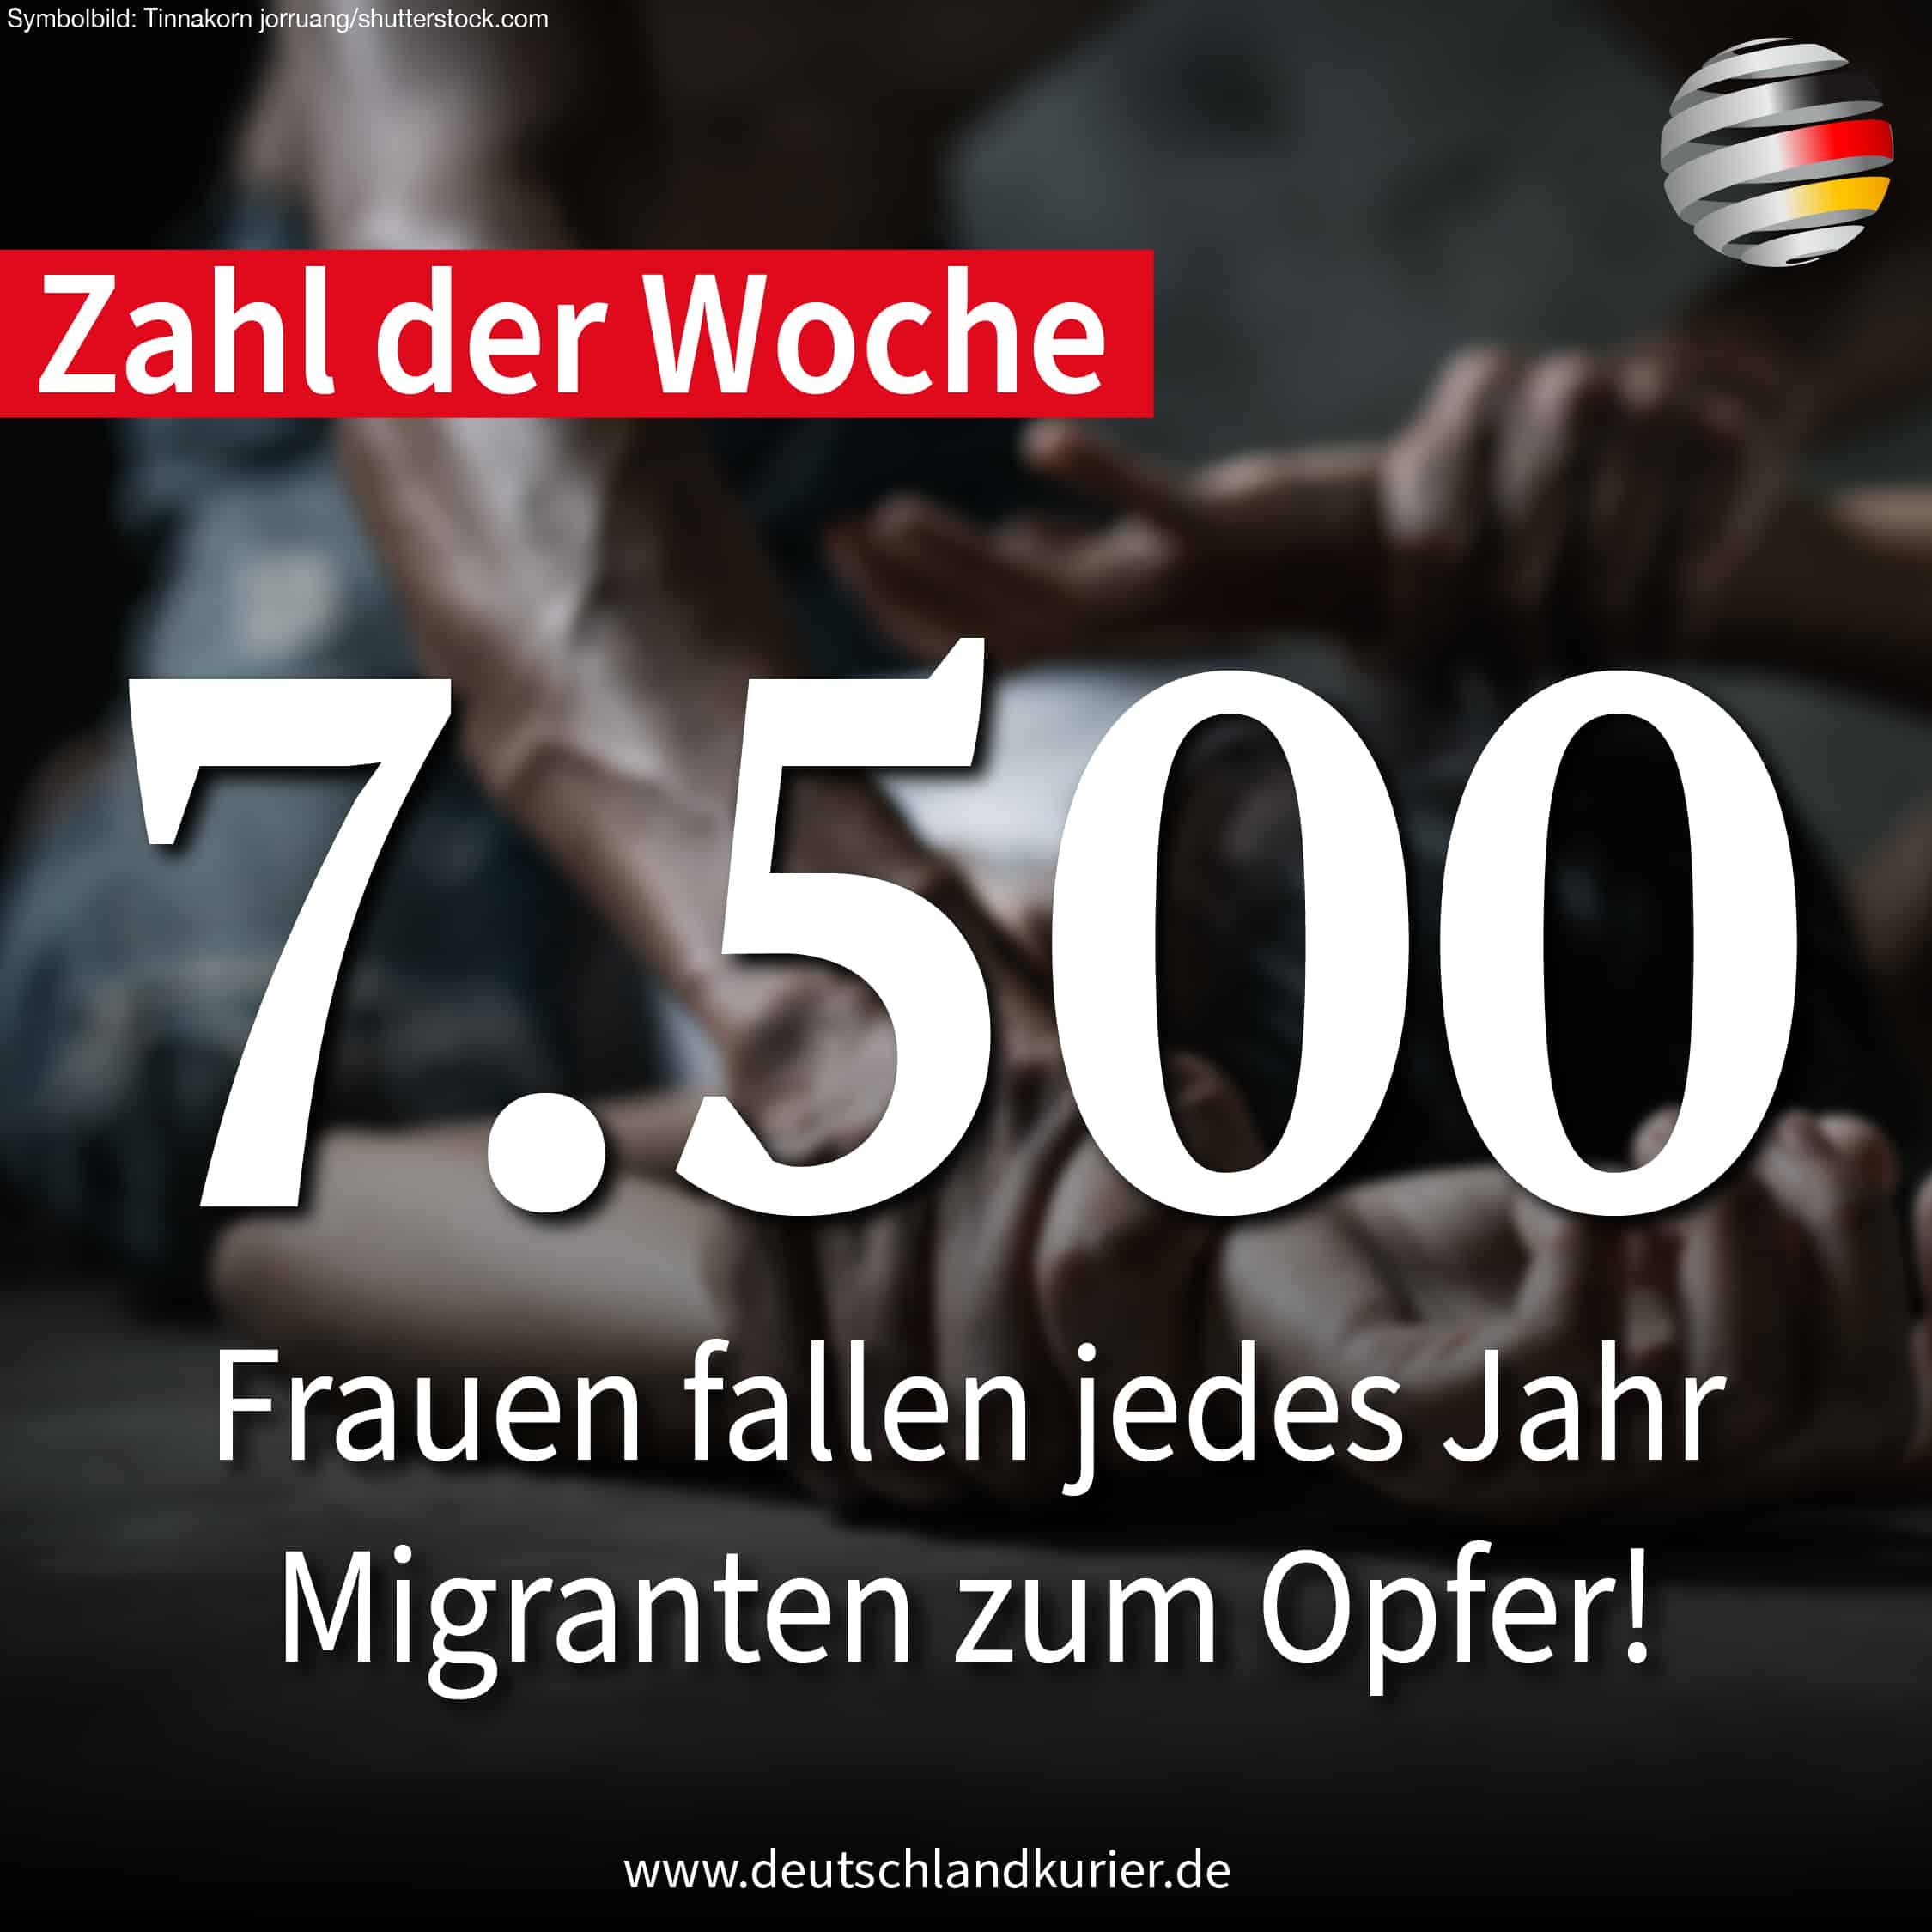 7.500 Frauen fallen jedes Jahr Migranten zum Opfer!